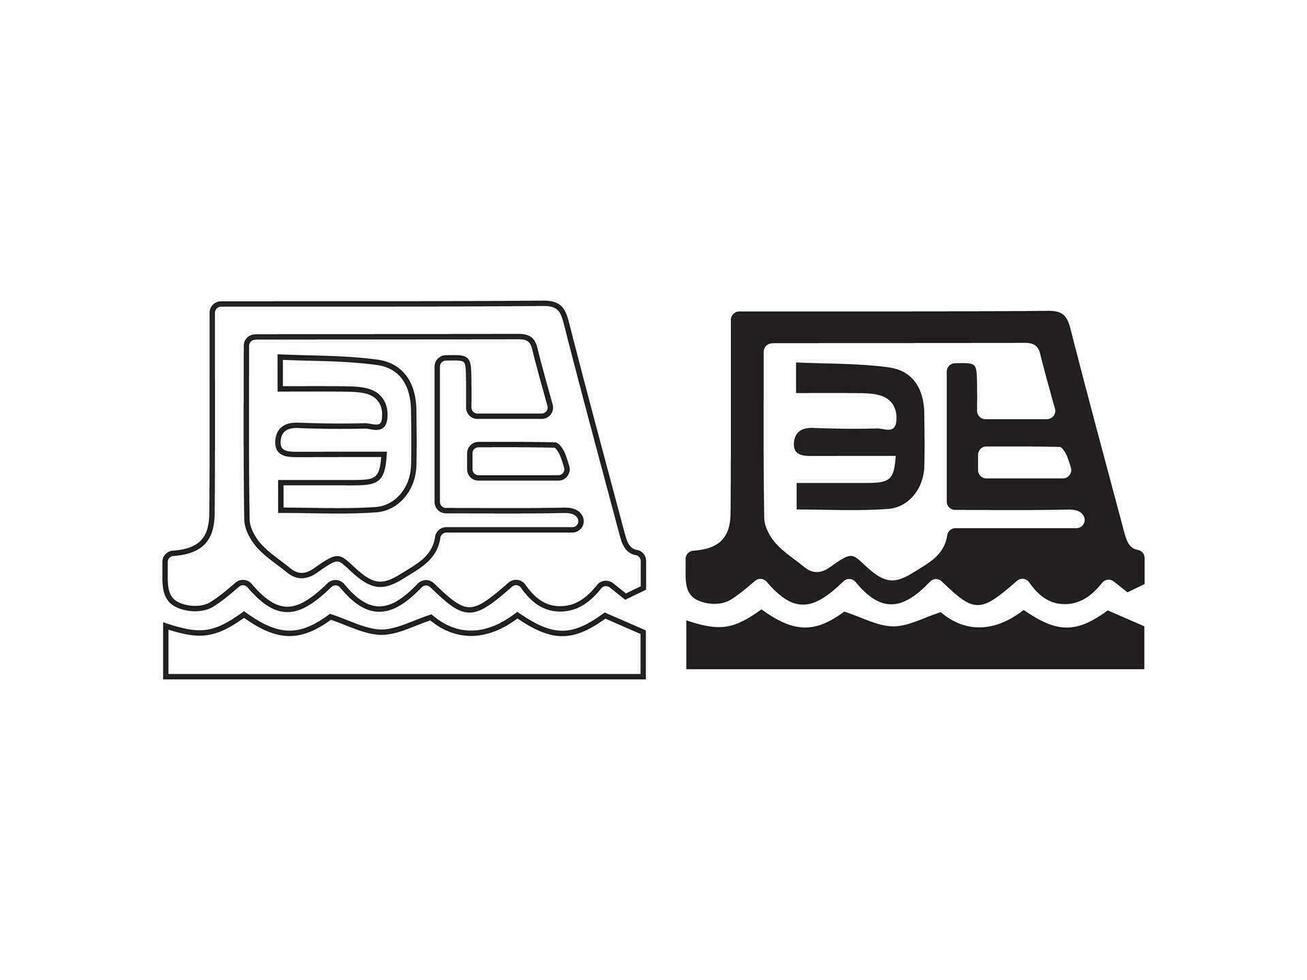 vector icoon reeks voor auto's. geïsoleerd, rechtdoorzee logo illustratie voor de voorkant visie. teken taal. ontwerp van een auto- logo, inclusief een concept sport- voertuig symbool silhouet